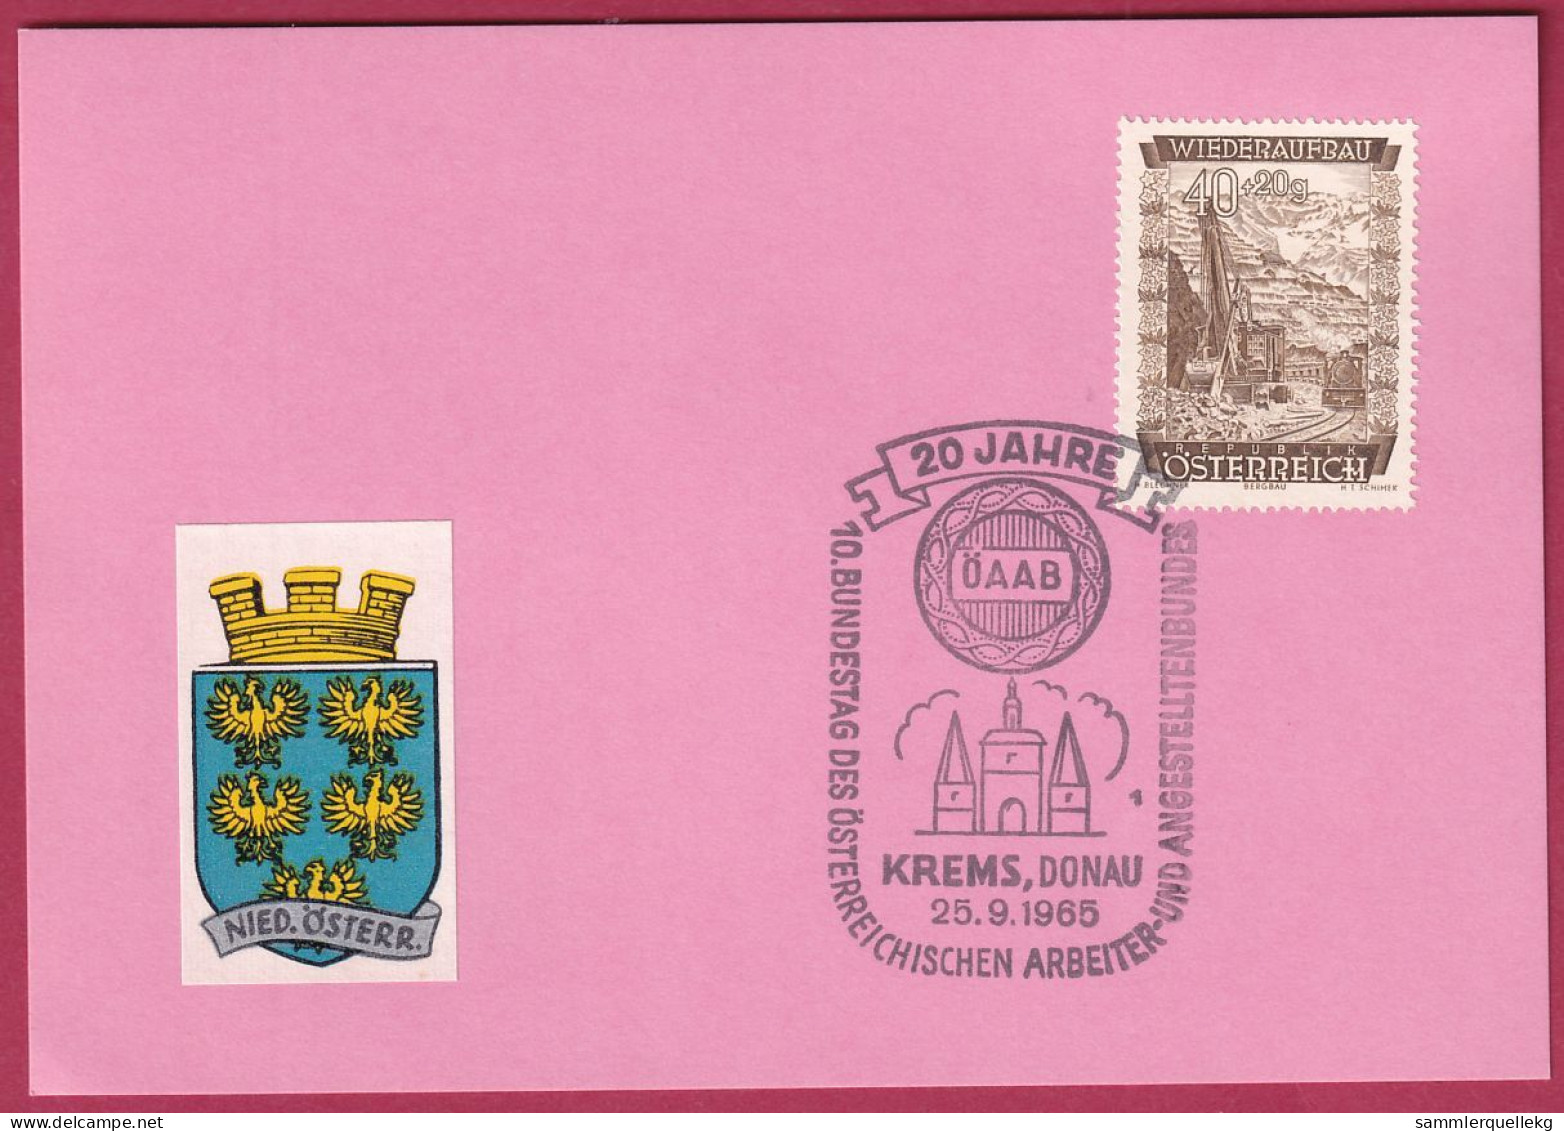 Österreich MNr. 861 Sonderstempel 25. 9. 1965 Krems An Der Donau 20 Jahre ÖAAB - Covers & Documents